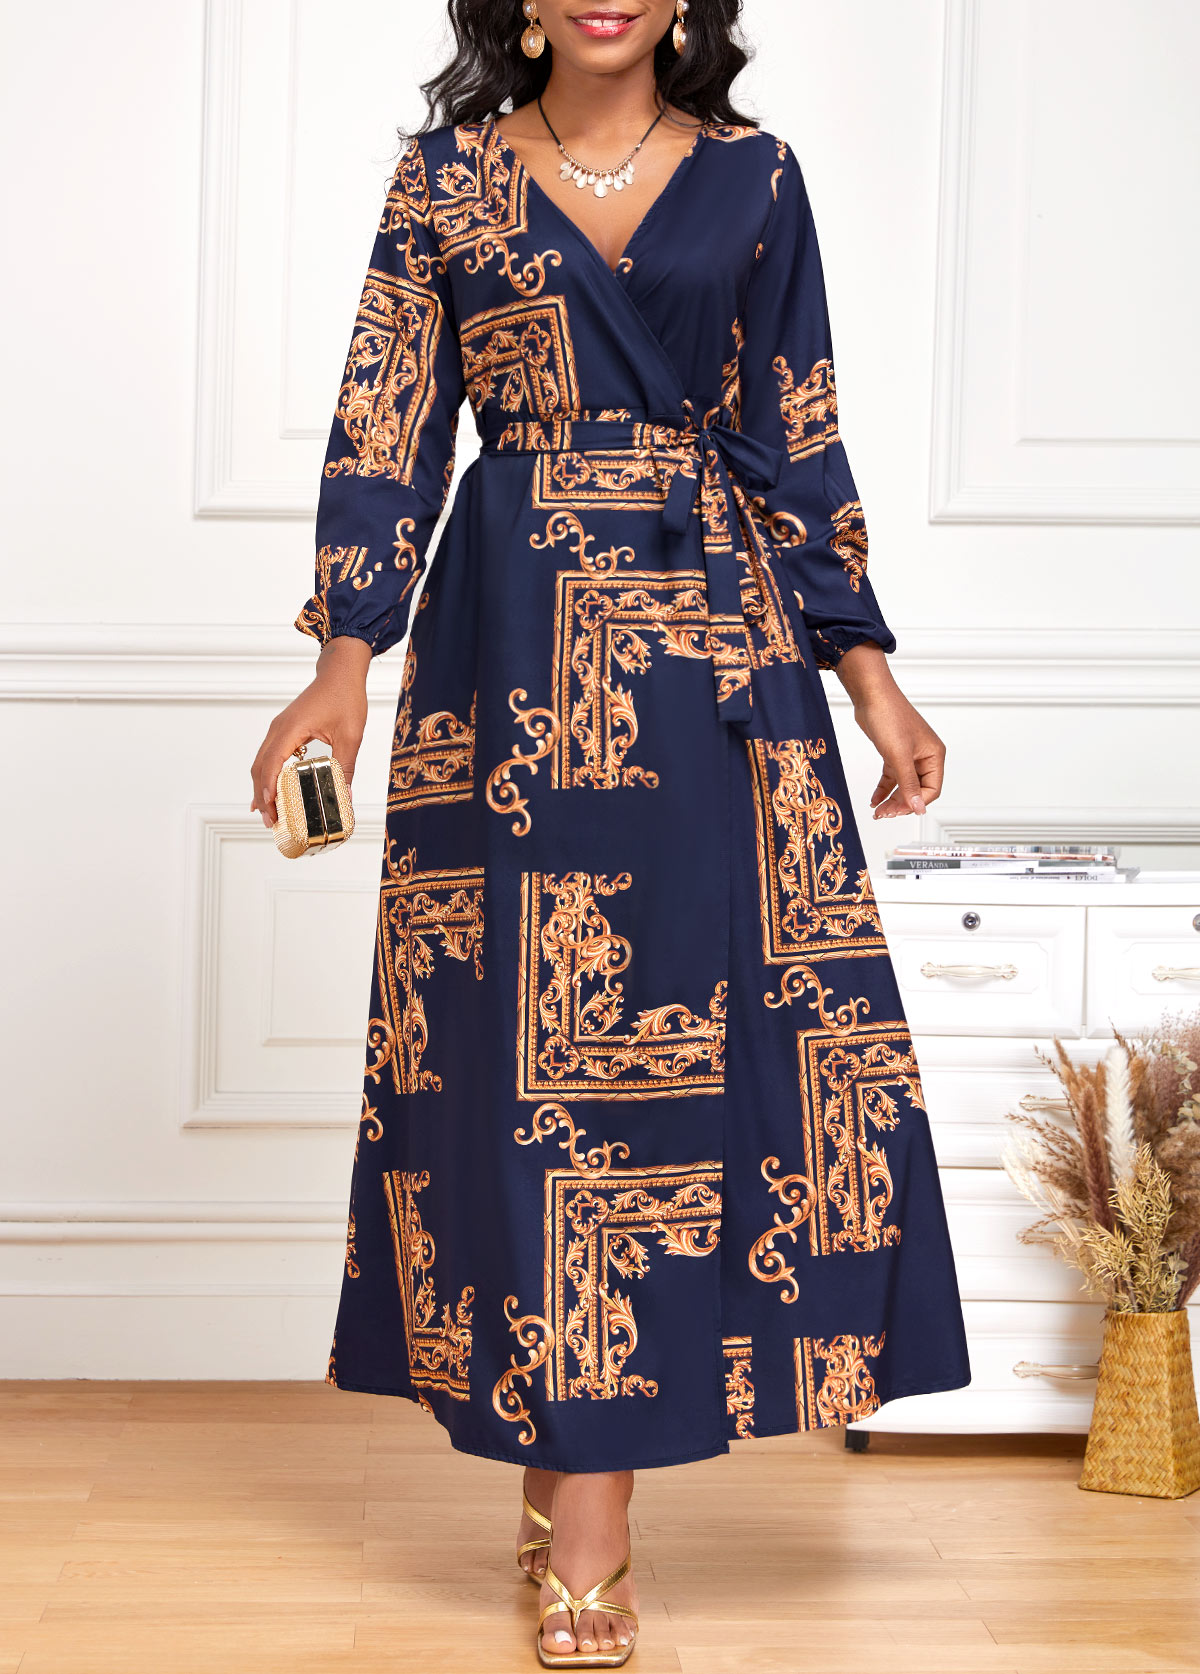 Baroque Print Criss Cross Belted Navy Maxi Dress